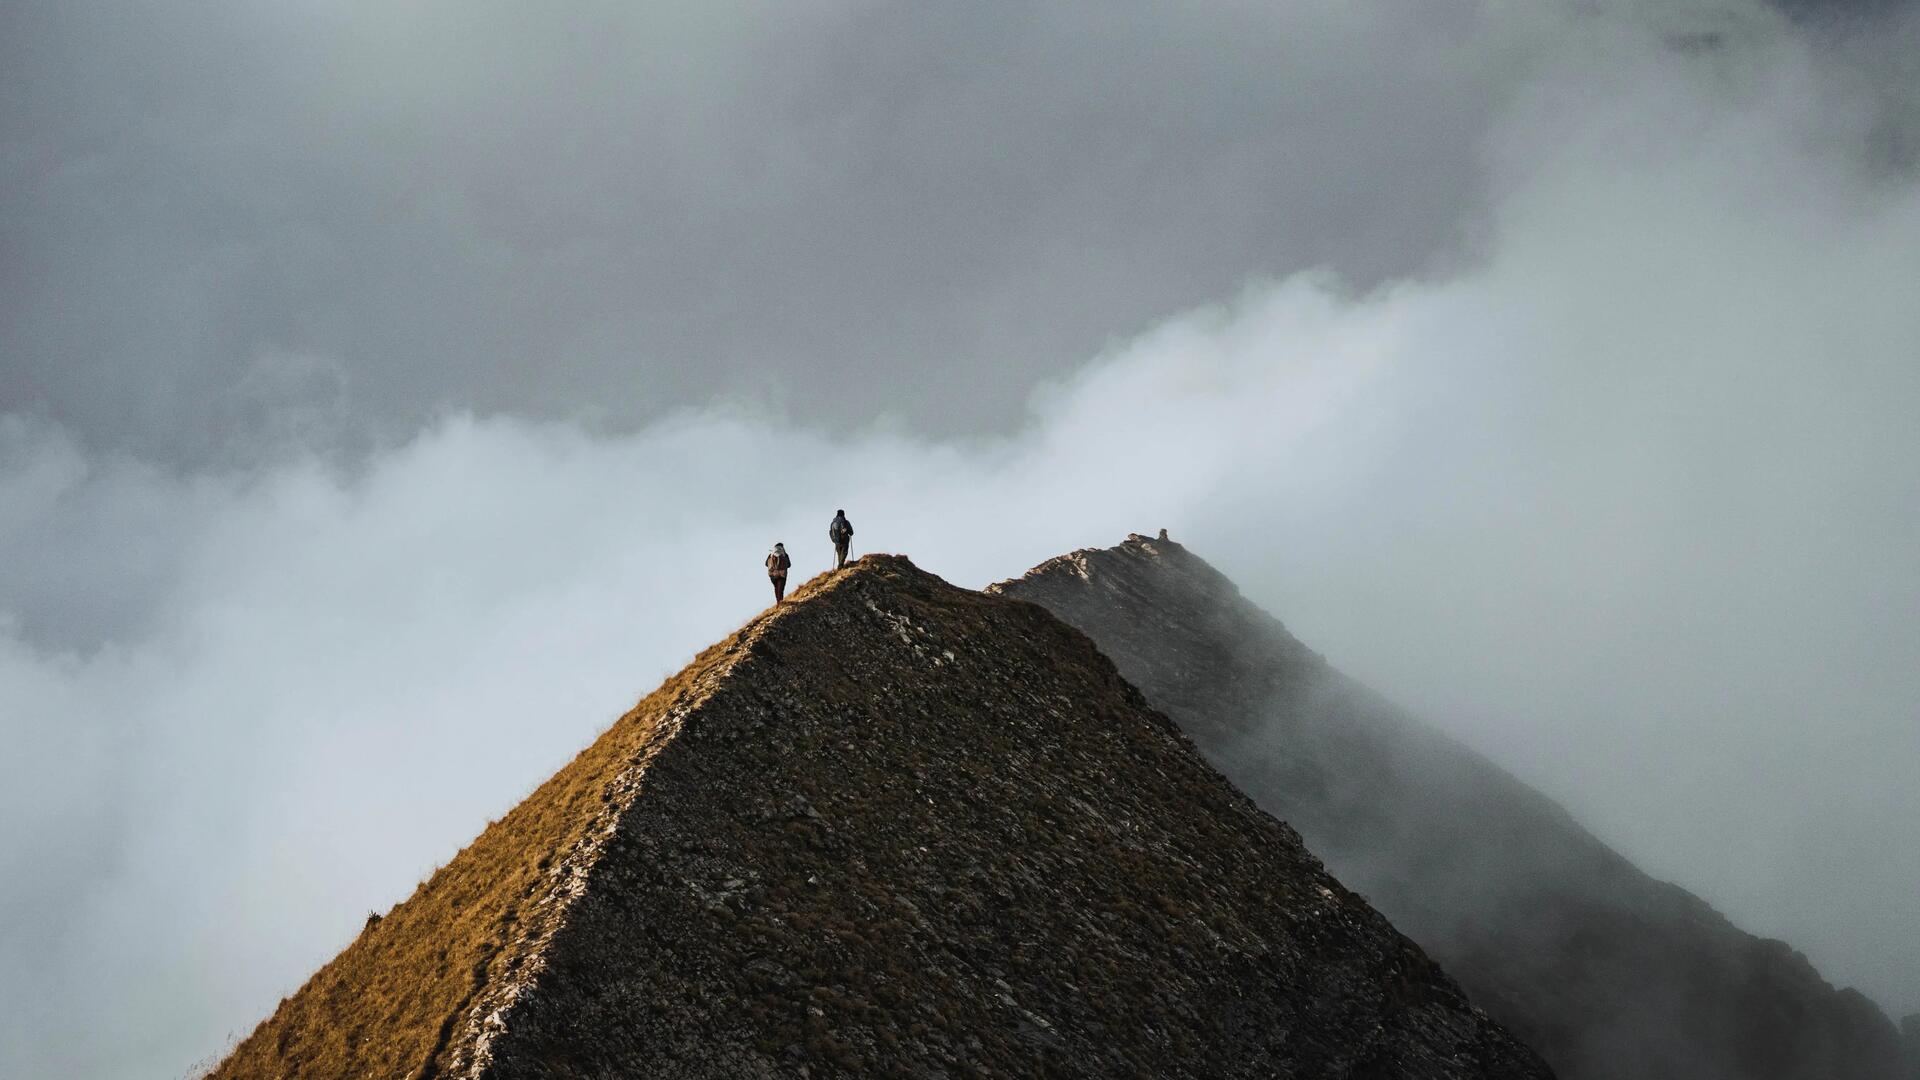 Trekkers on the mountain